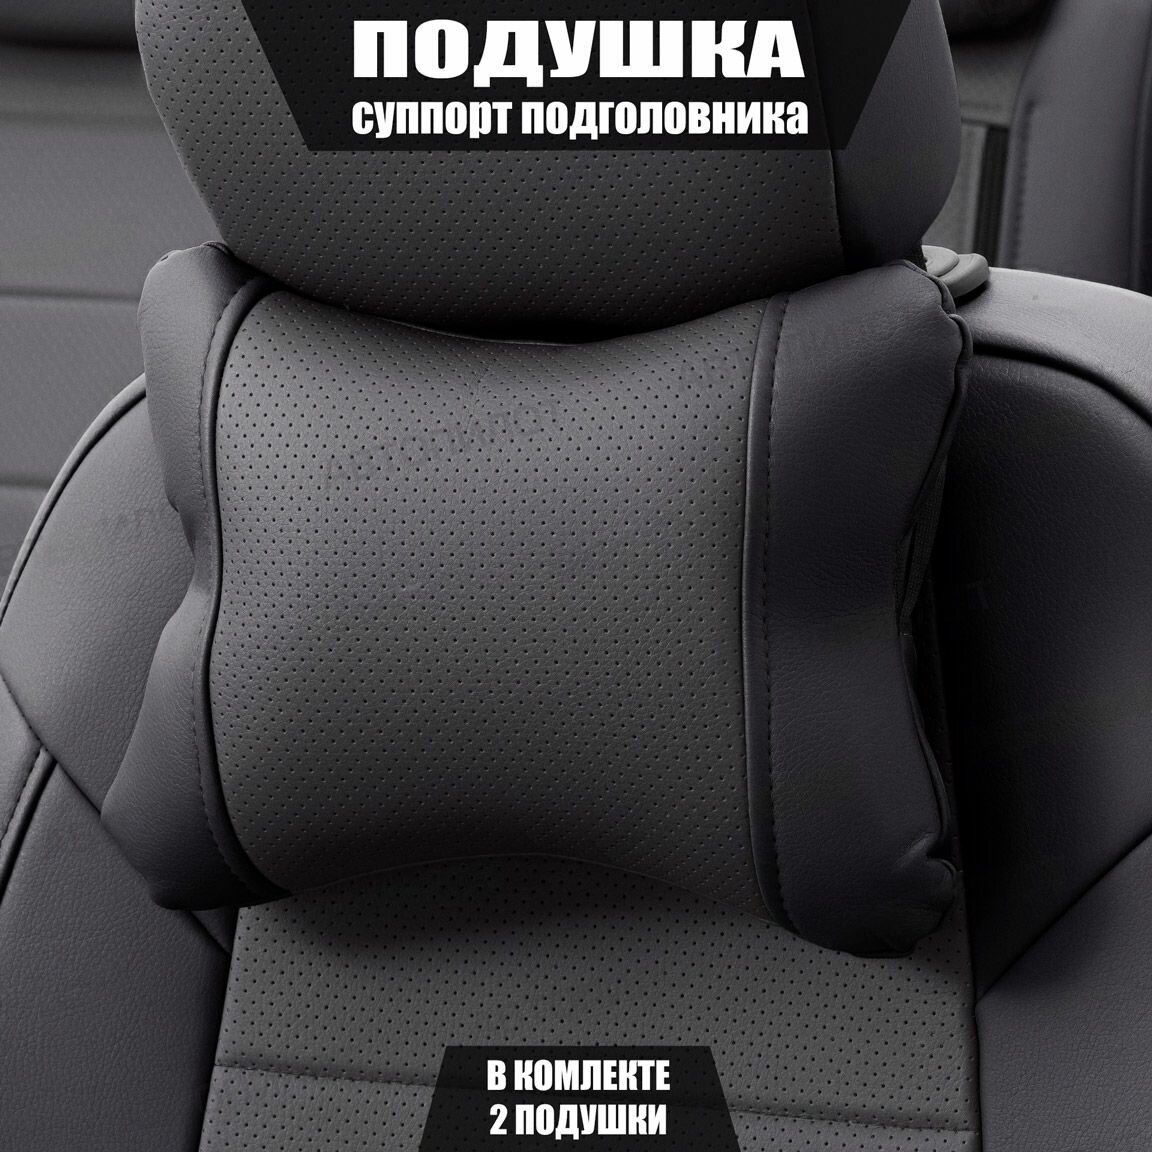 Подушки под шею (суппорт подголовника) для Сузуки Джимни (2005 - 2012) внедорожник открытый / Suzuki Jimny Экокожа 2 подушки Черный